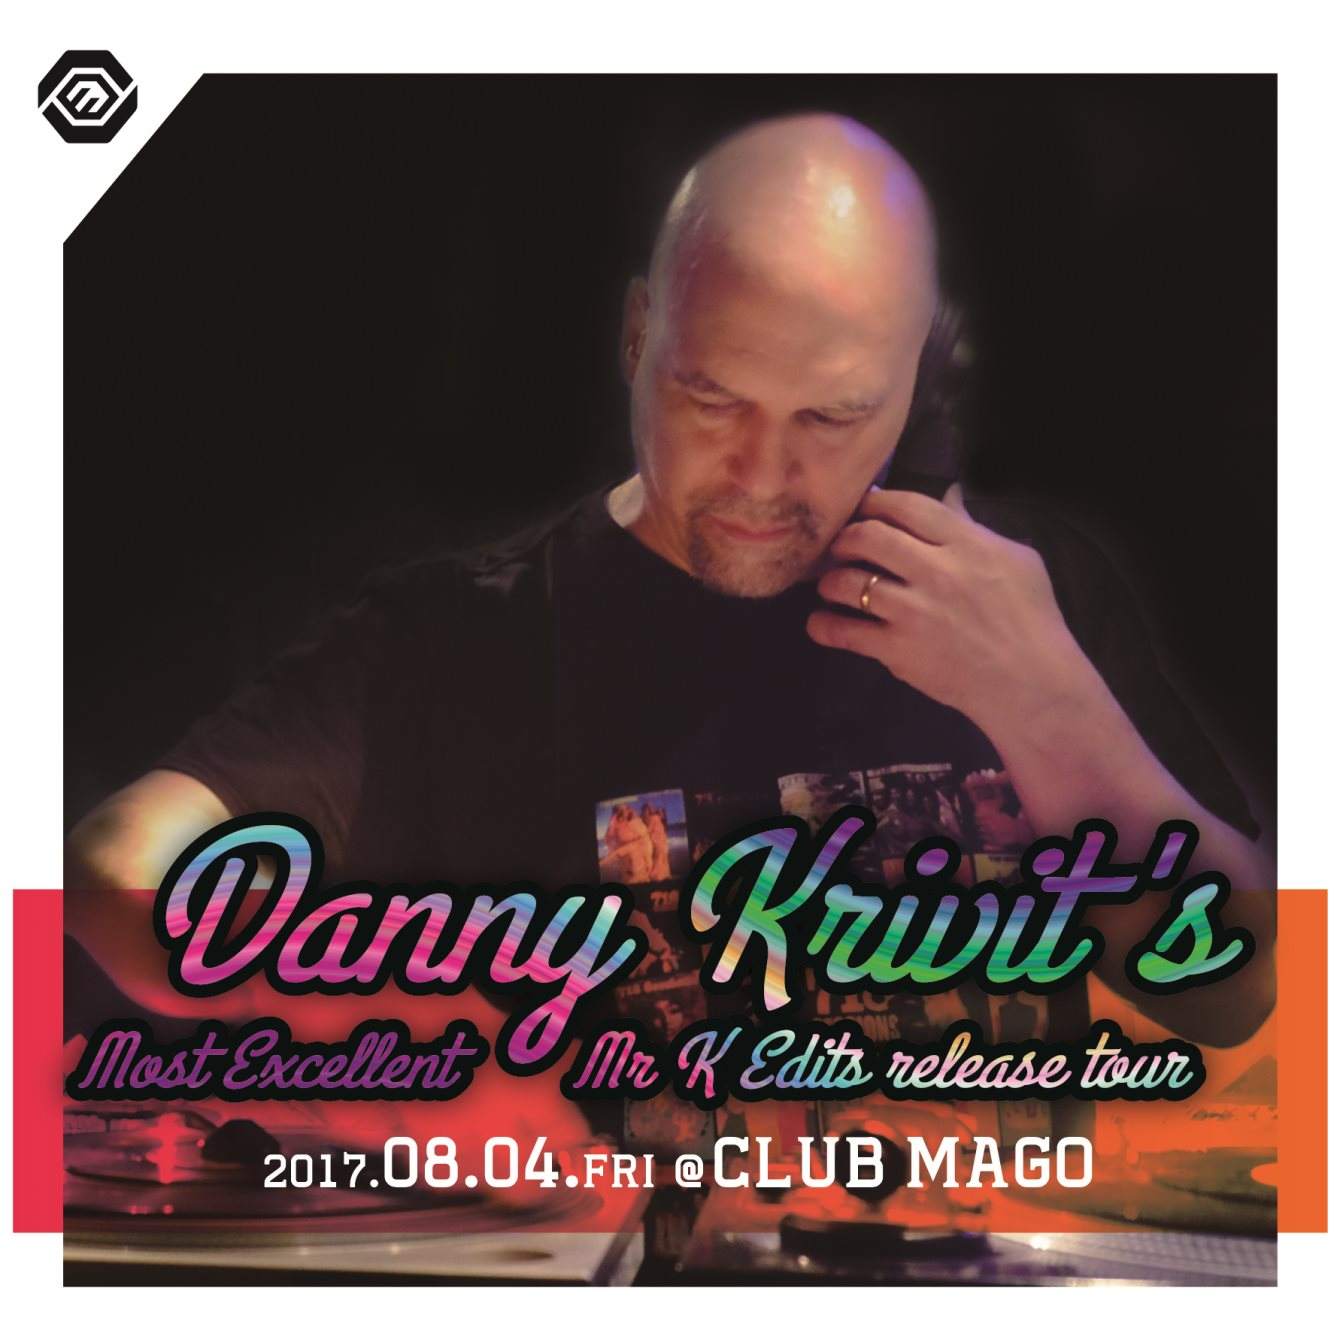 Danny Krivit’s “Most Excellent Mr K Edits” release tour - フライヤー表